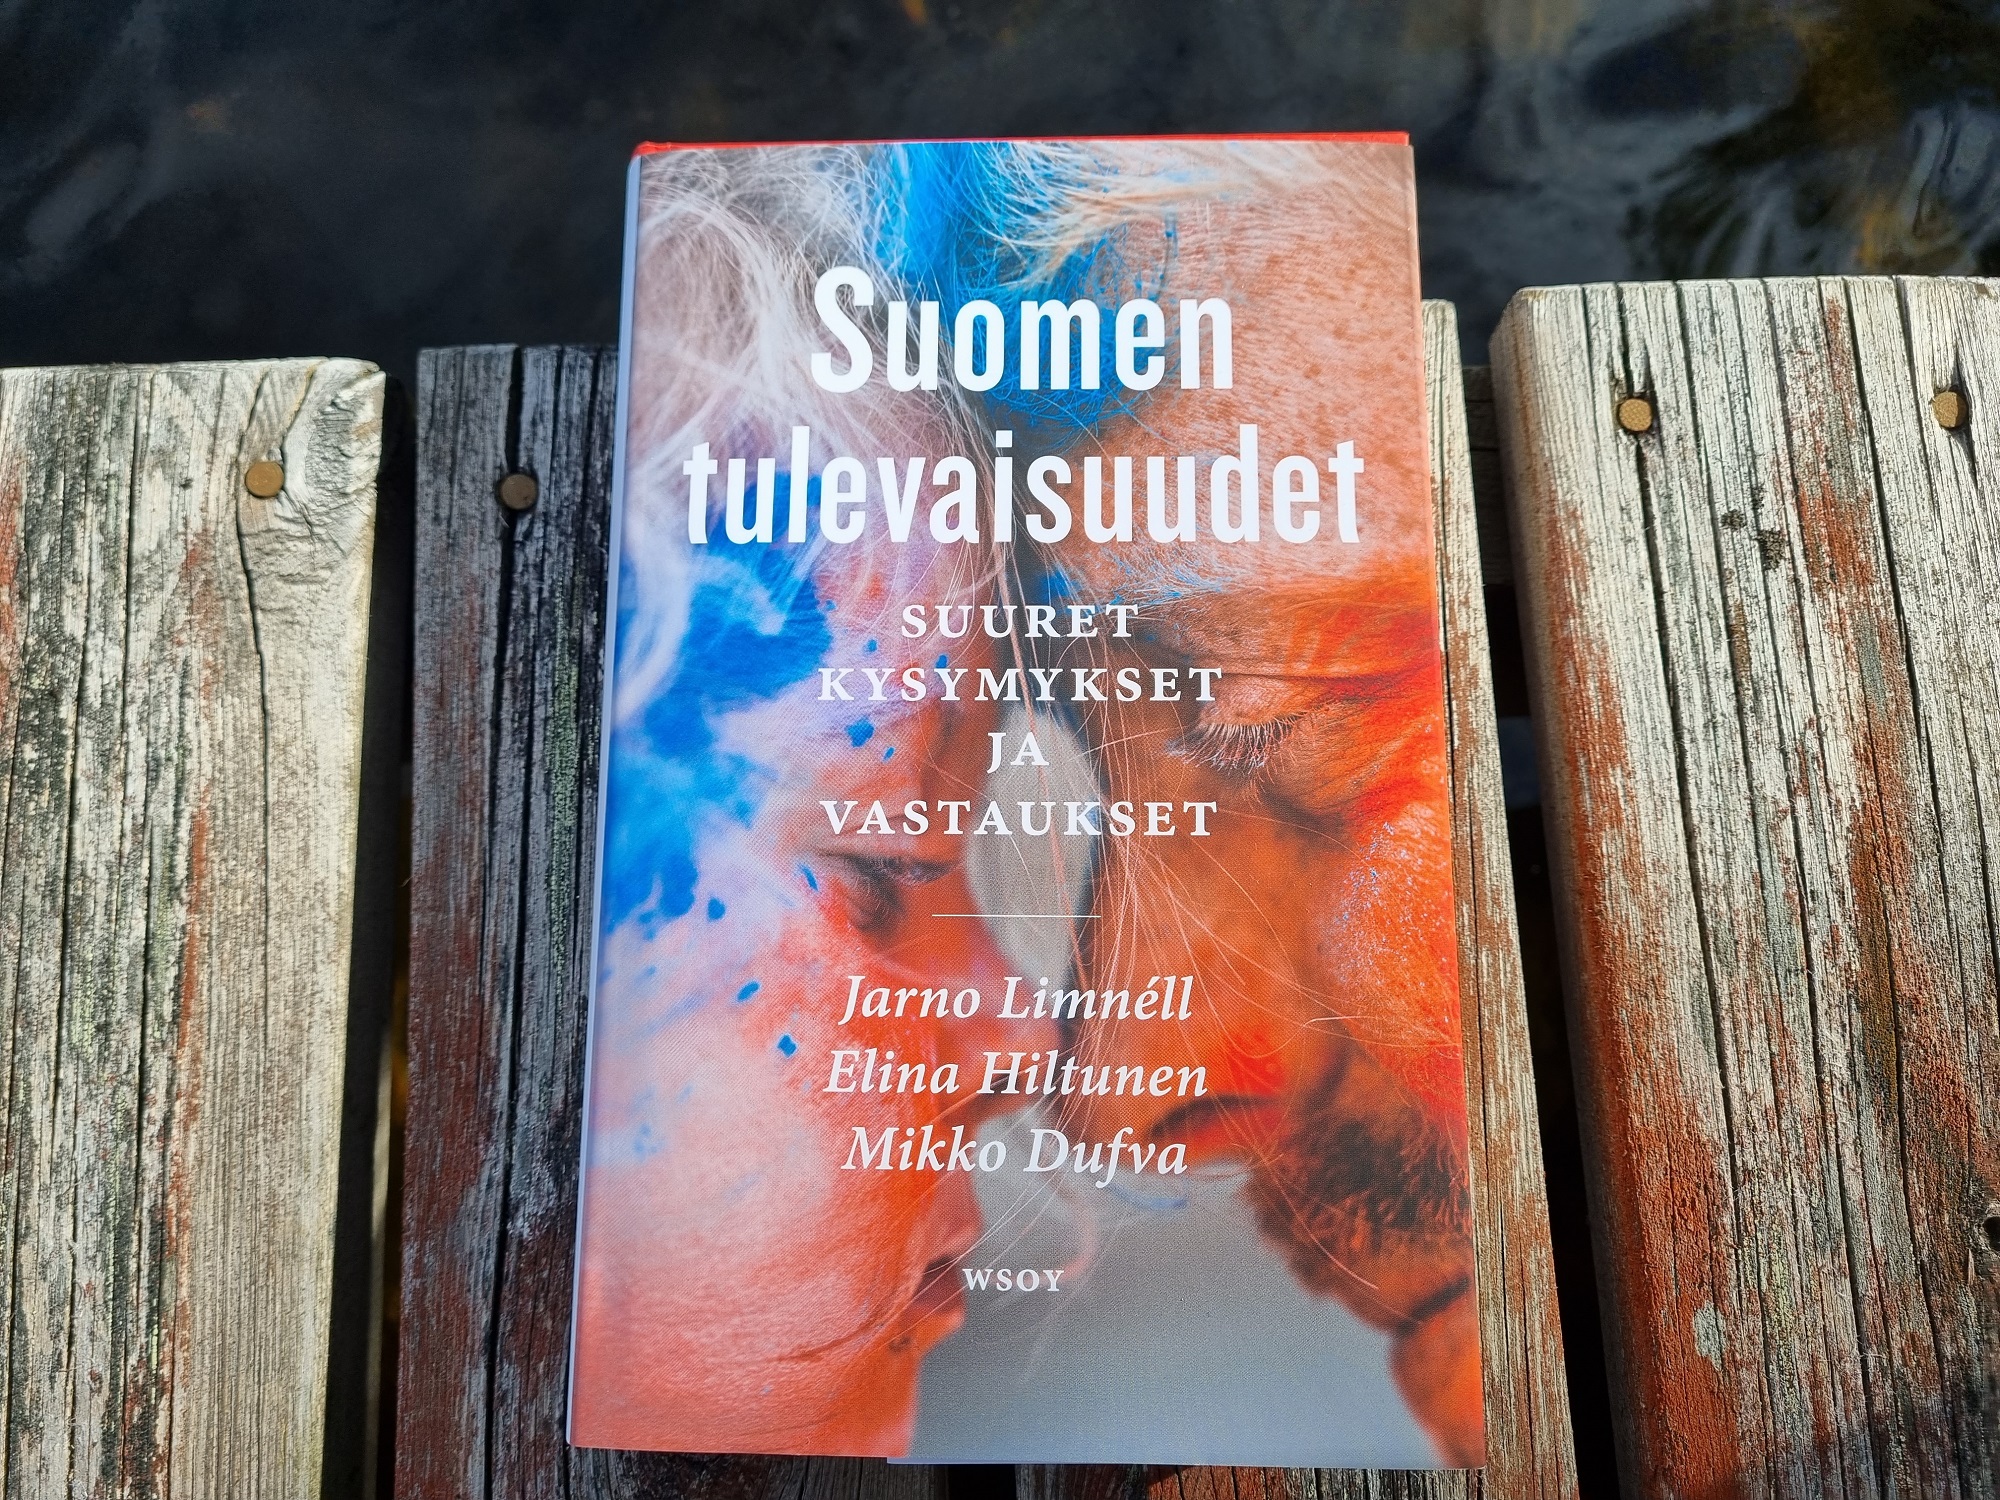 Kansikuva kirjasta Limnéll, Hiltunen ja Dufva: Suomen tulevaisuudet - suuret kysymykset ja vastaukset